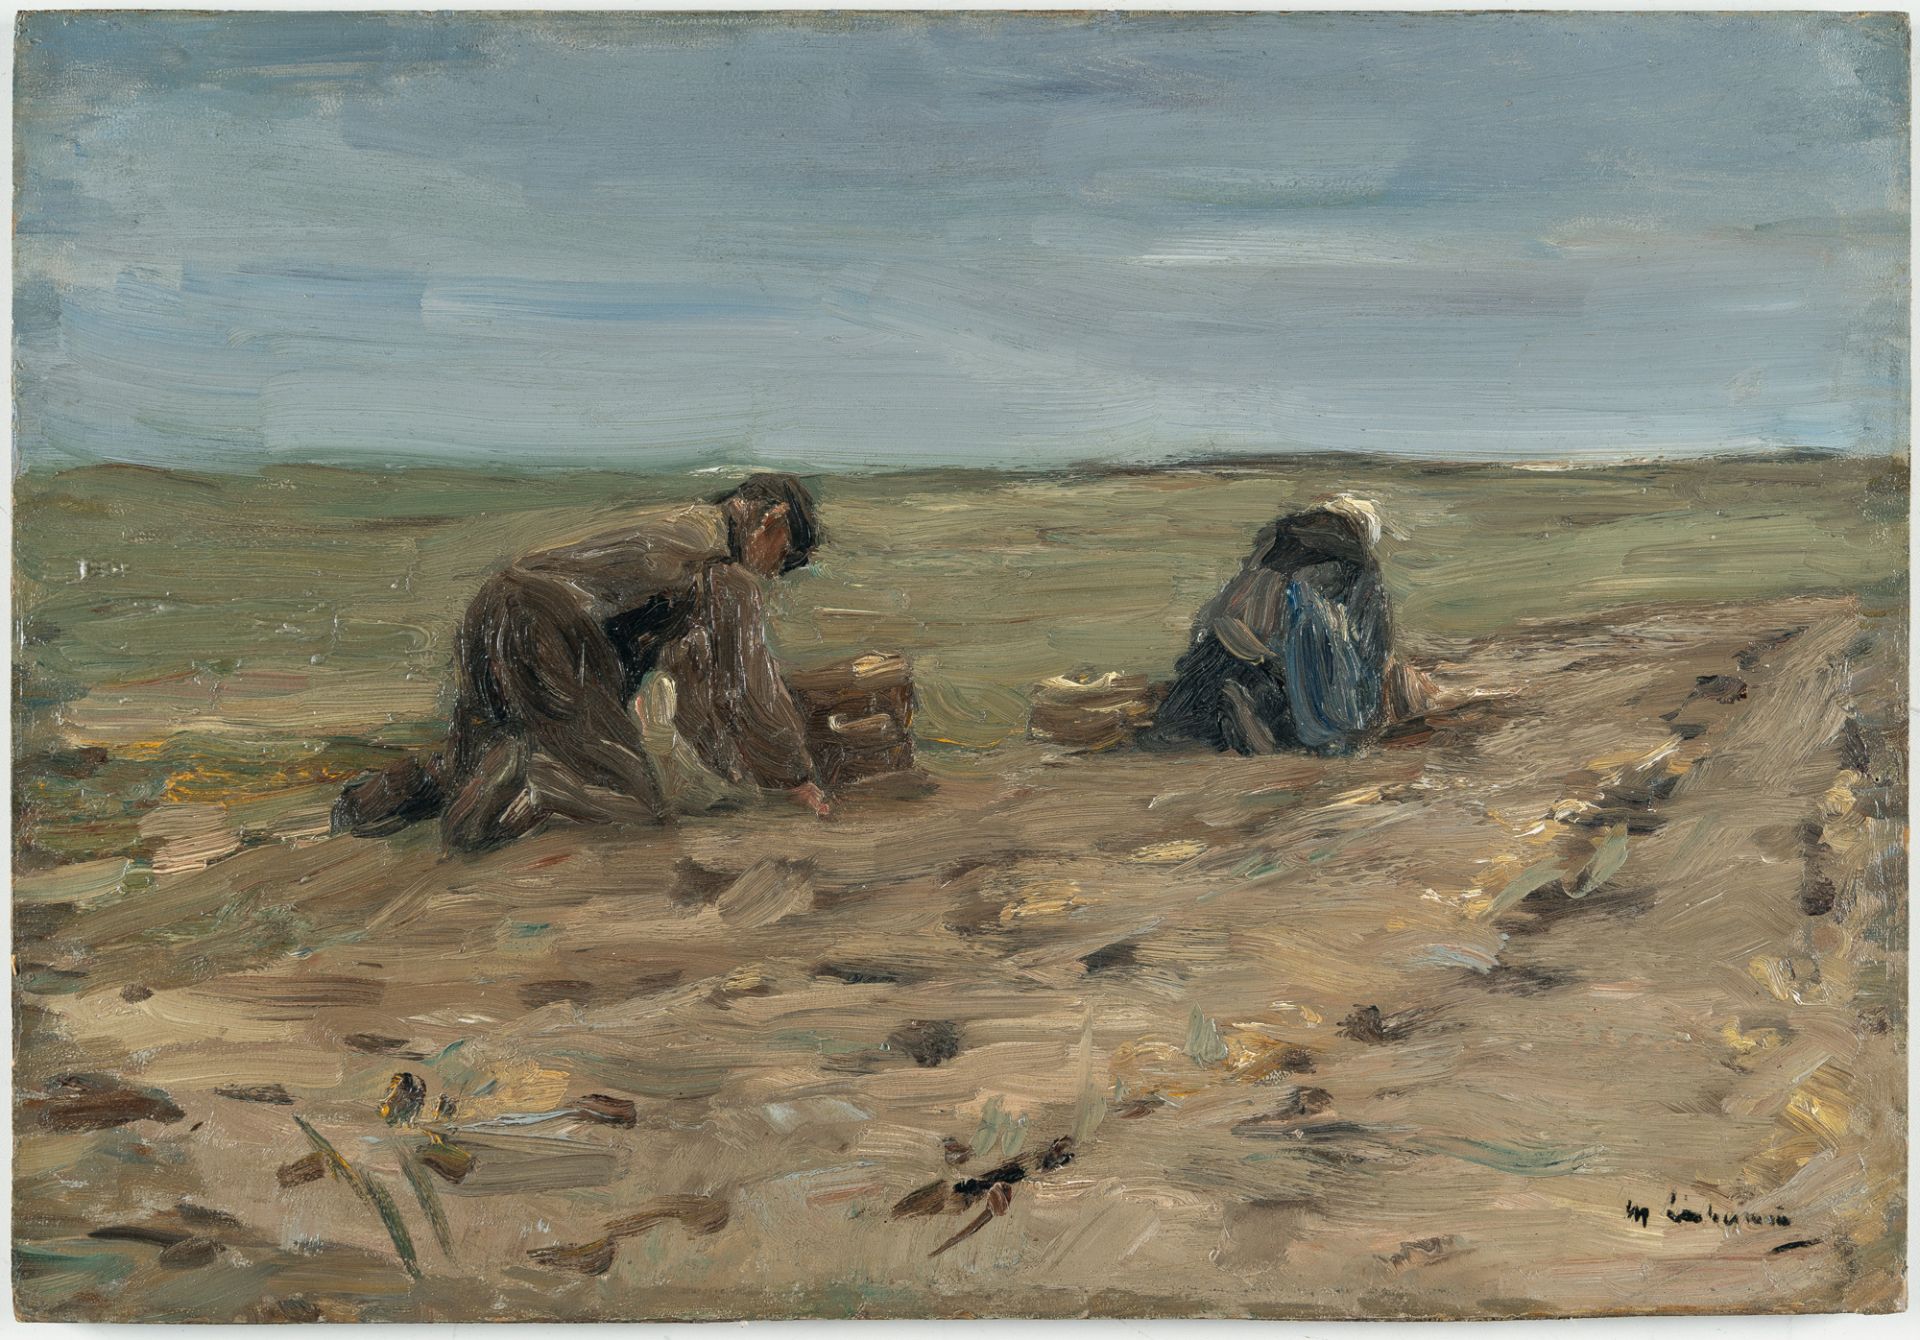 Max Liebermann (1847 - Berlin - 1935) – Kartoffelbuddler in den Dünen (Potato harvest in the dunes) - Bild 2 aus 4